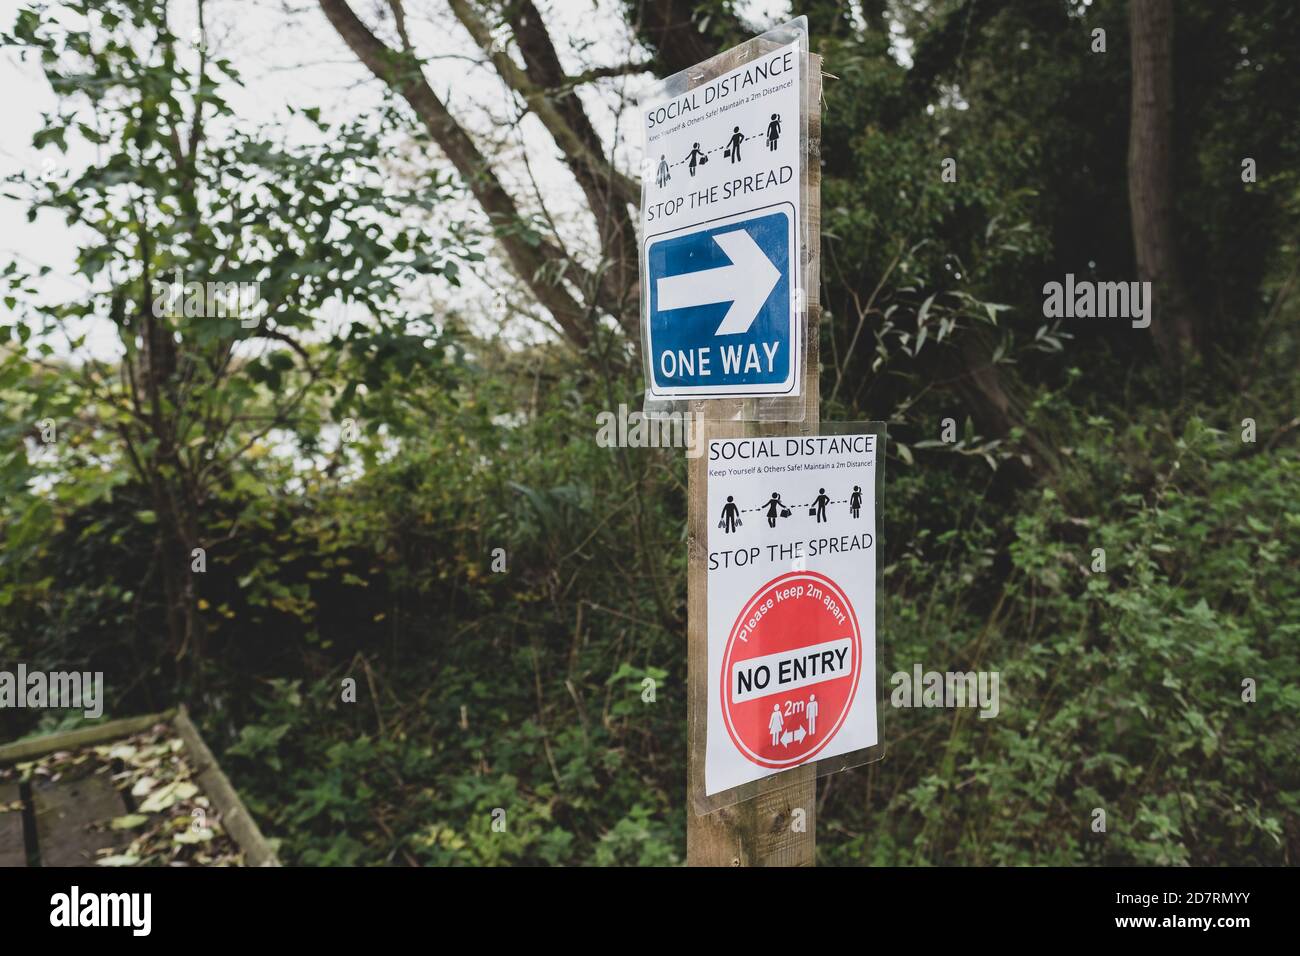 Mehrere behelfsmäßige Covid-19 Warnschilder für Besucher eines Naturschutzgebietes. Warnung vor sozialer Distanz während der Fahrt im Park. Stockfoto